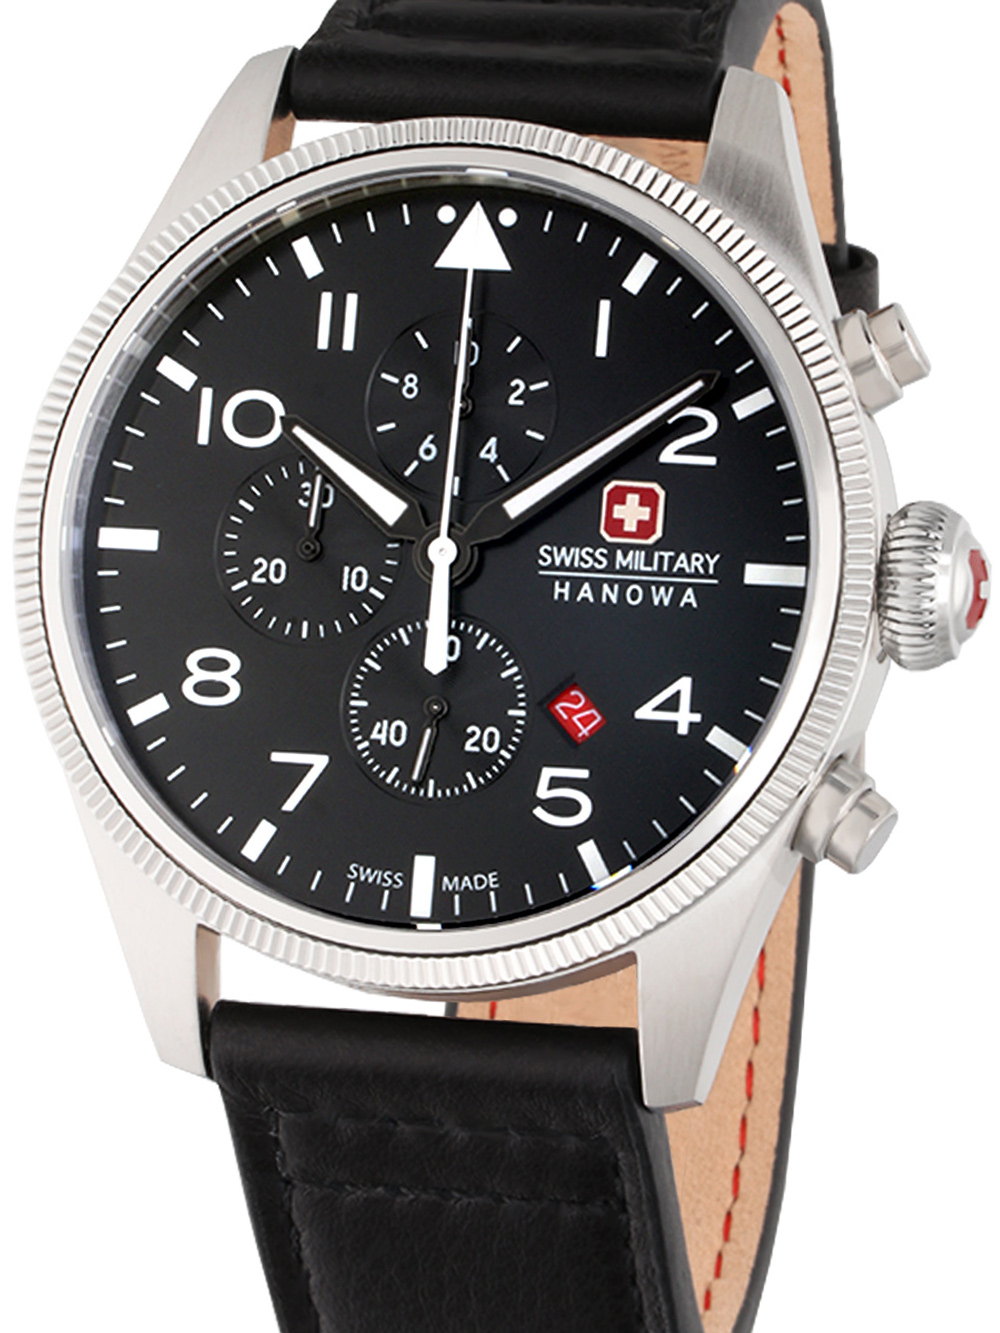 SWISS MILITARY HANOWA Uhren: günstig, portofrei & sicher kaufen!